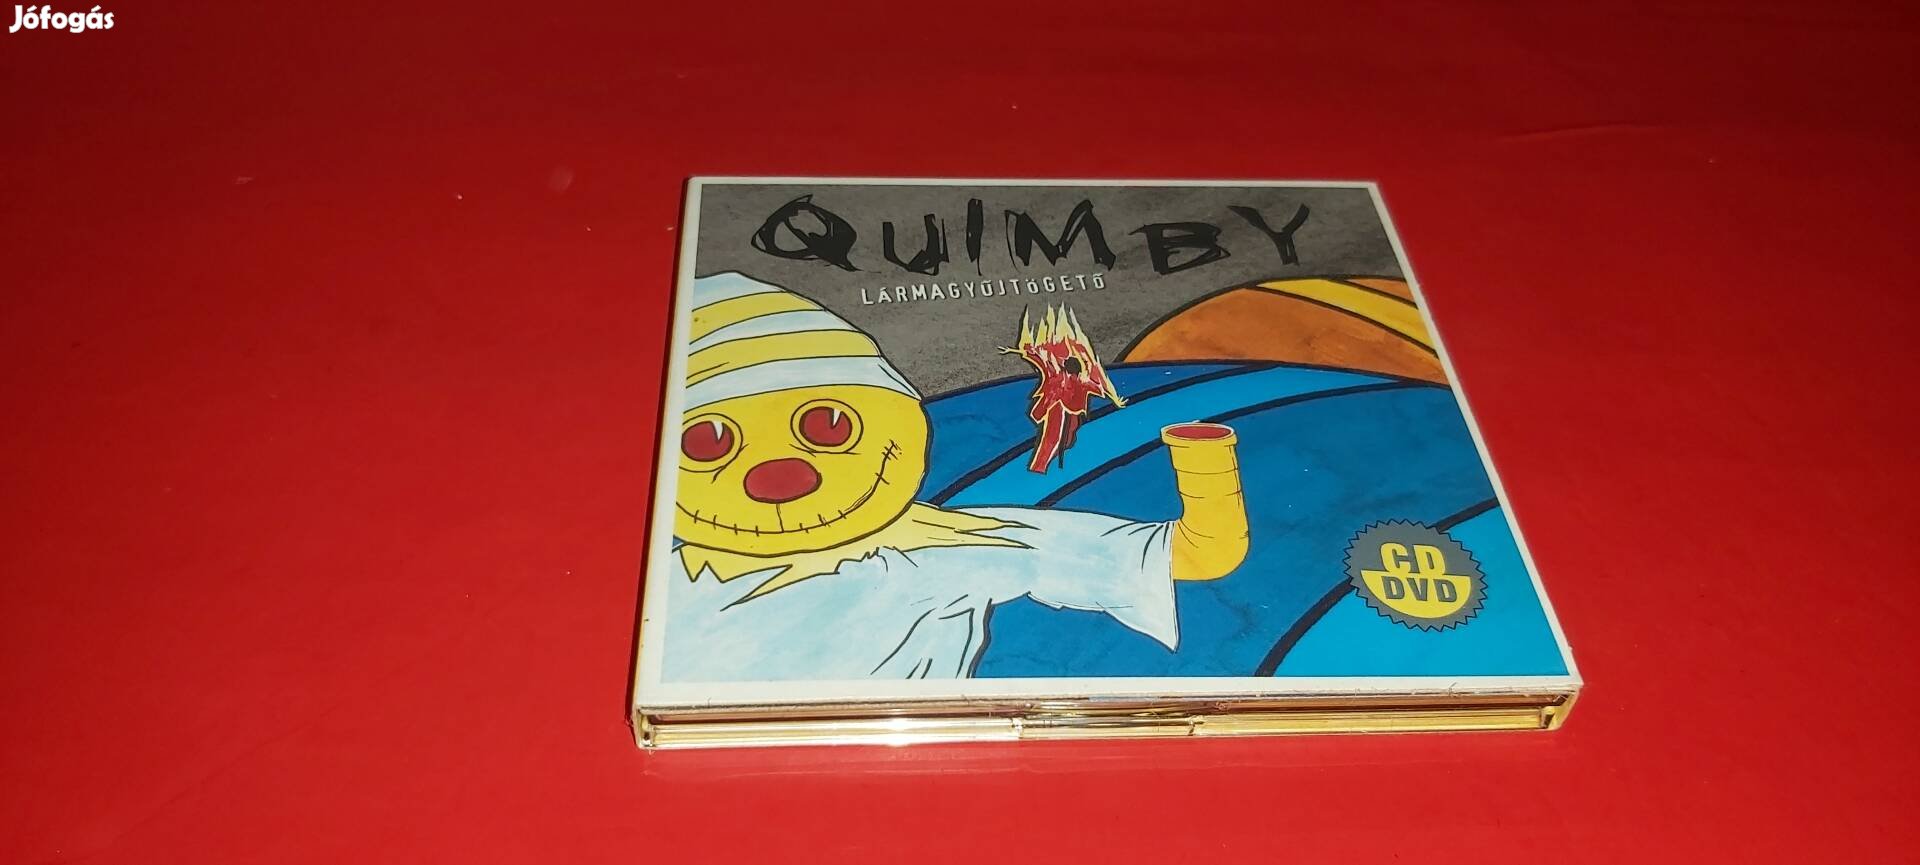 Quimby Lármagyűjtögető Cd + Dvd 2012